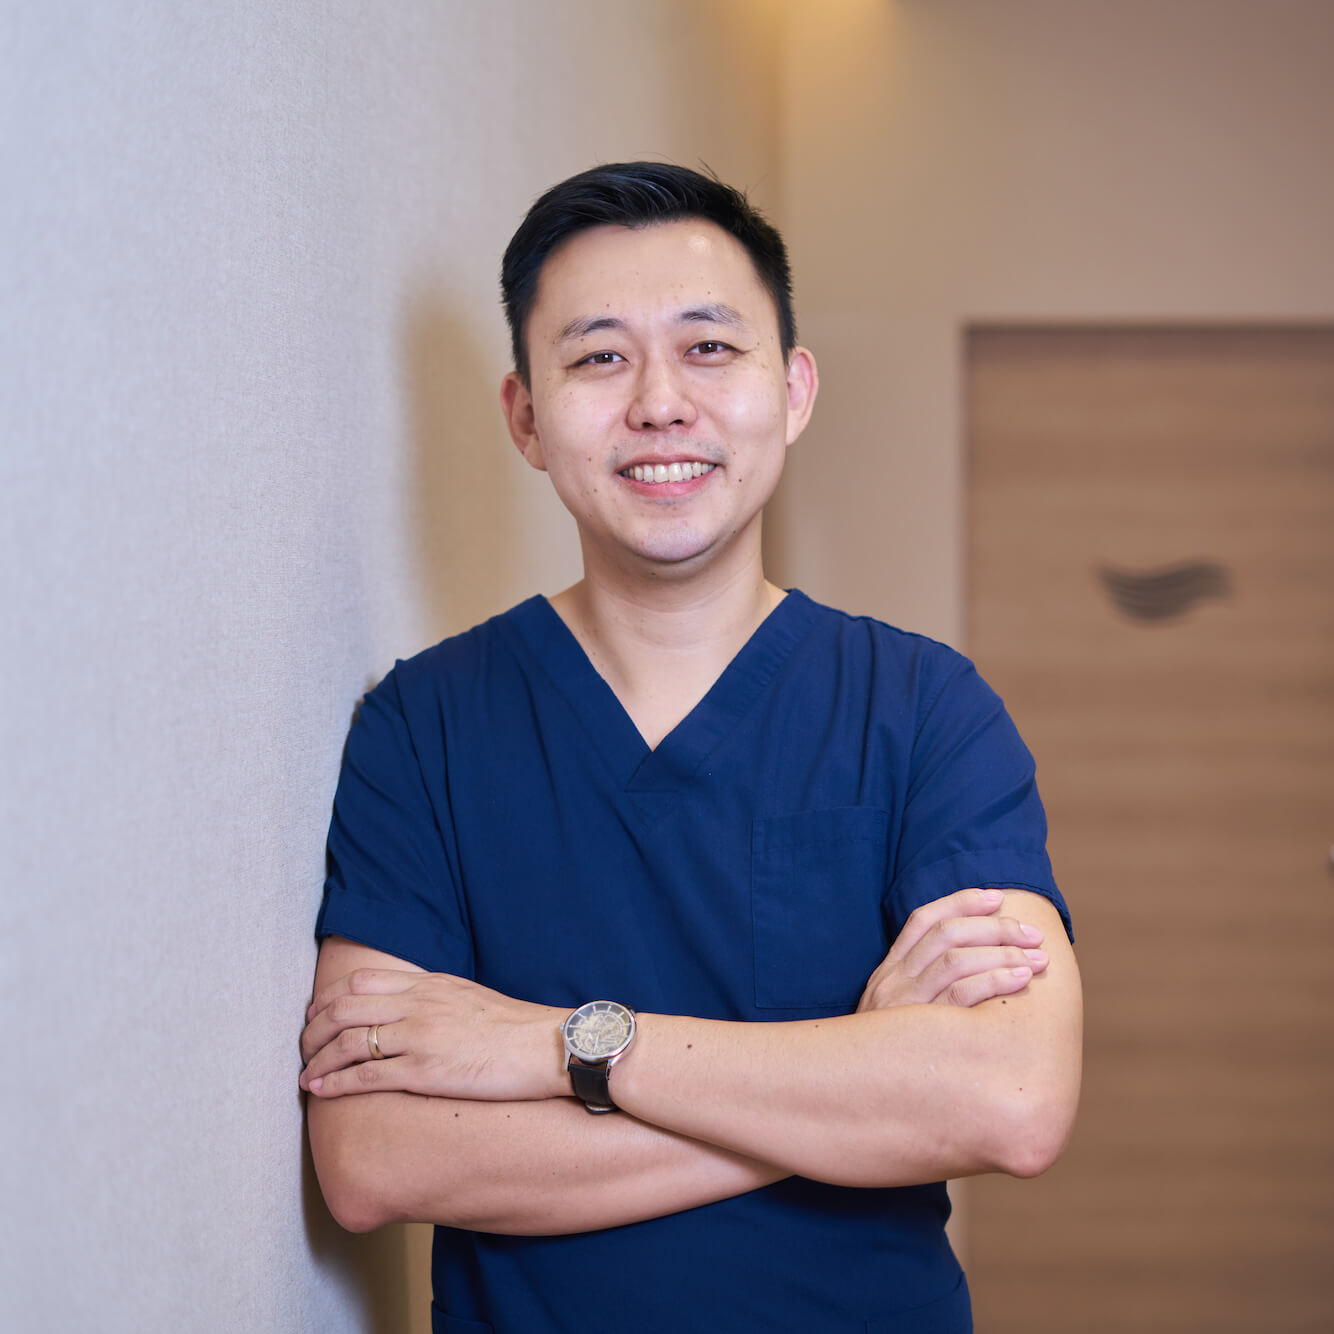 dr zhang qi profile